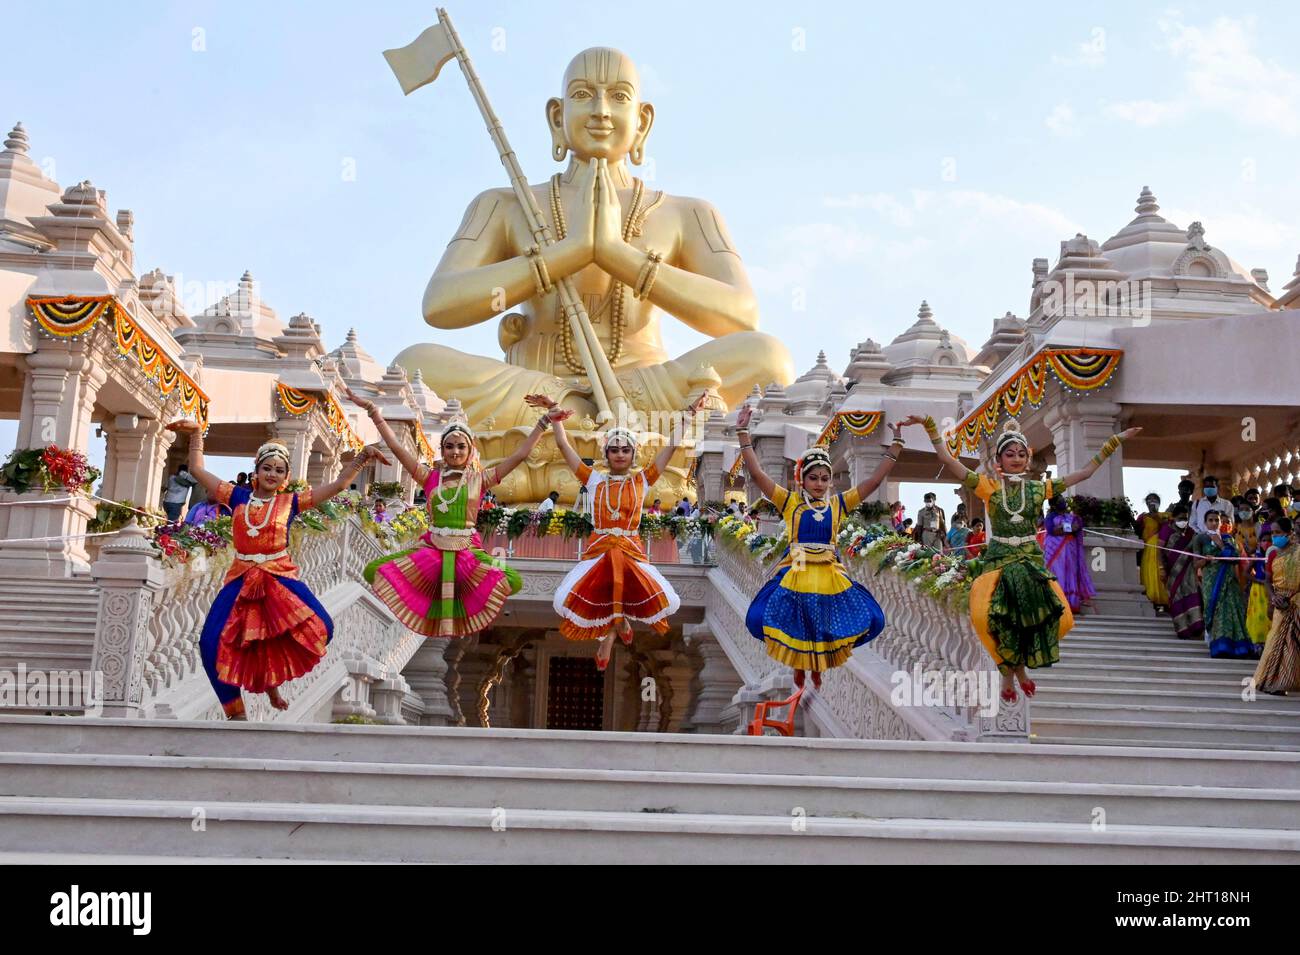 Statue de Ramanuja, Statue de l'égalité, danse féminine, Muchintal, Hyderabad, Telengana, Inde. Banque D'Images